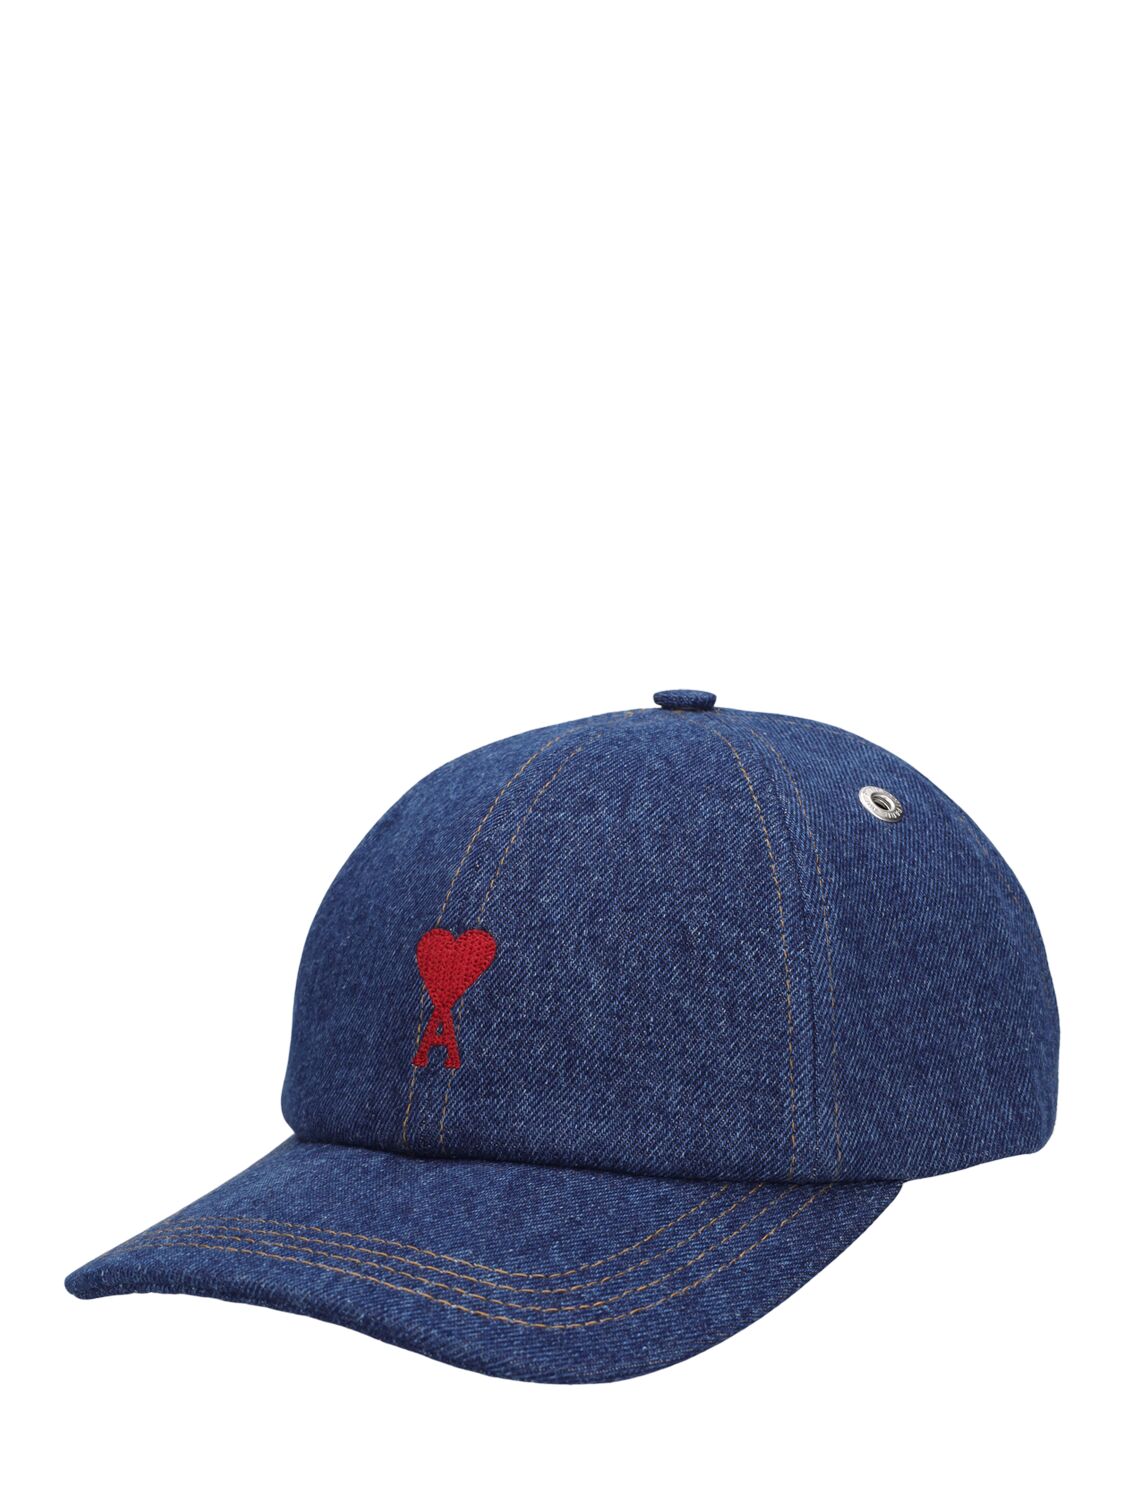 RED ADC刺绣棒球帽